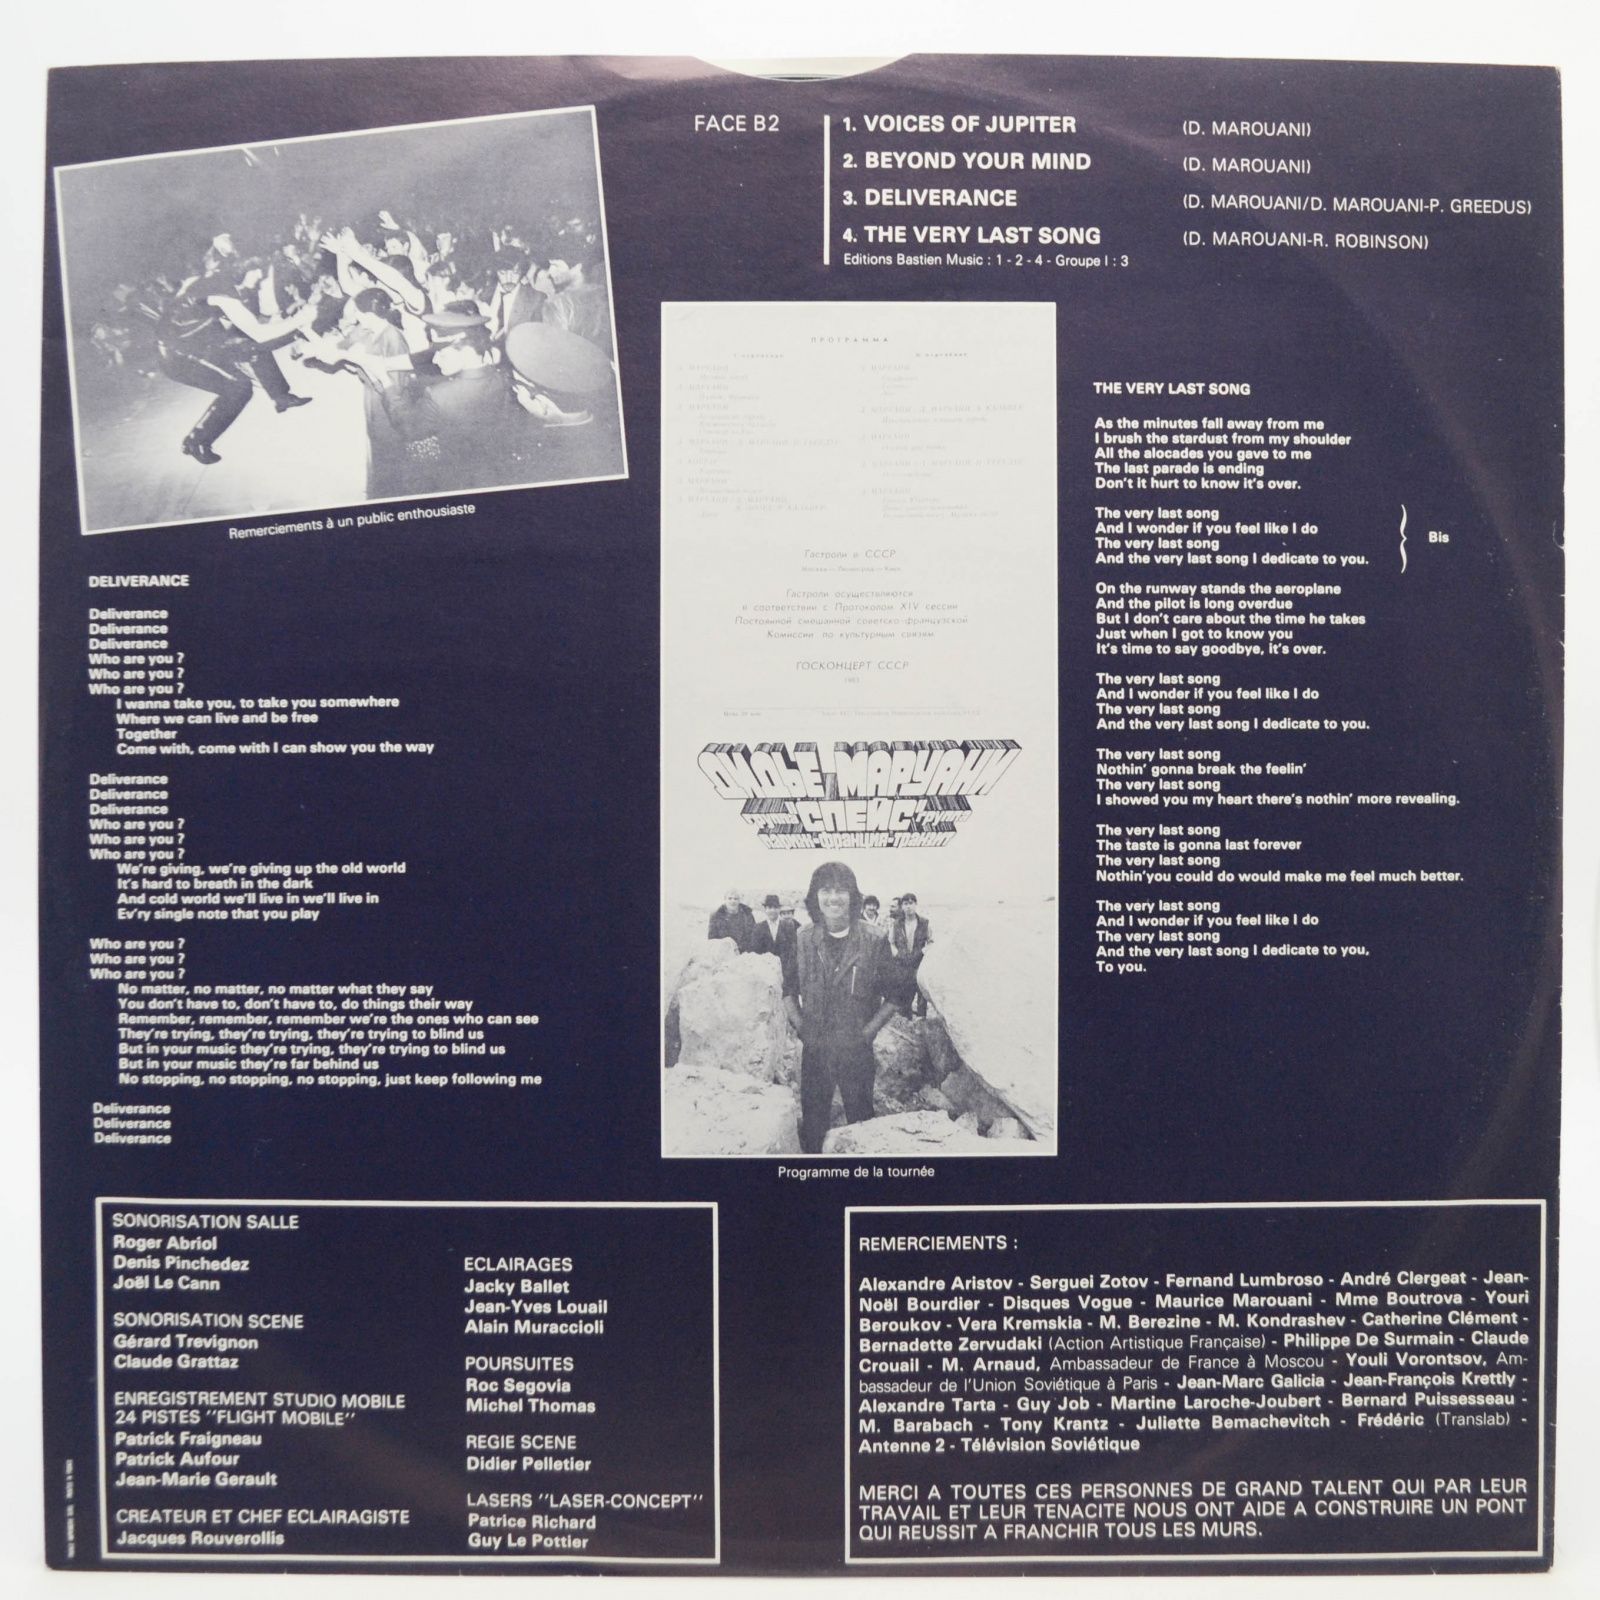 Didier Marouani & Paris • France • Transit — Concerts En URSS (2LP, 1-st, France), 1983